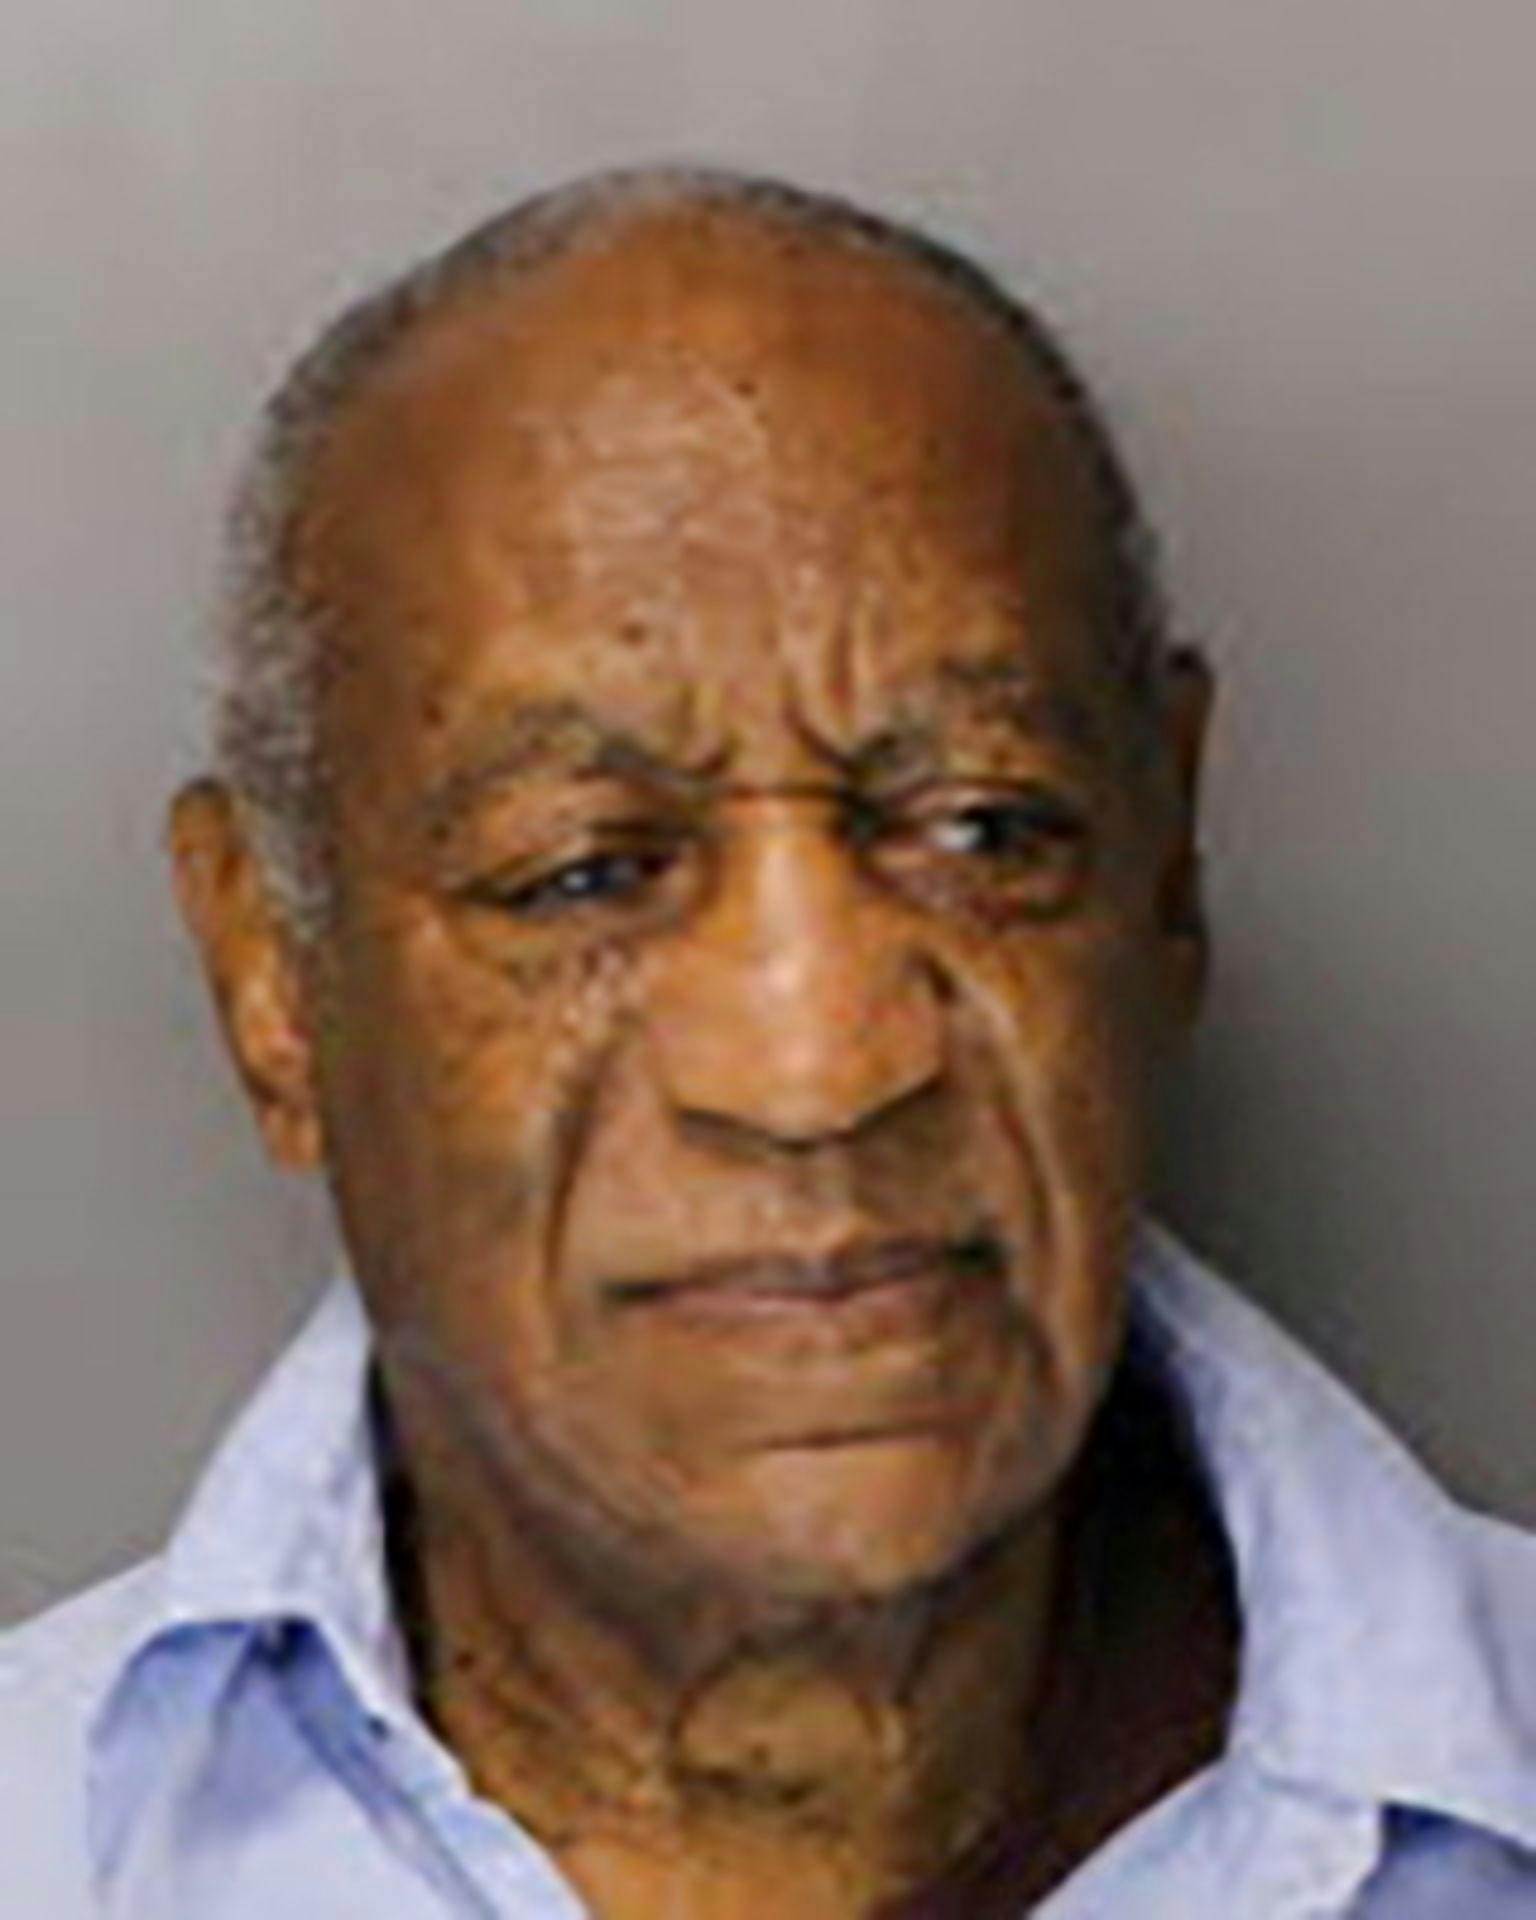 Et såkaldt mugshot fra Bill Cosbys anholdelse tilbage i 2018.
